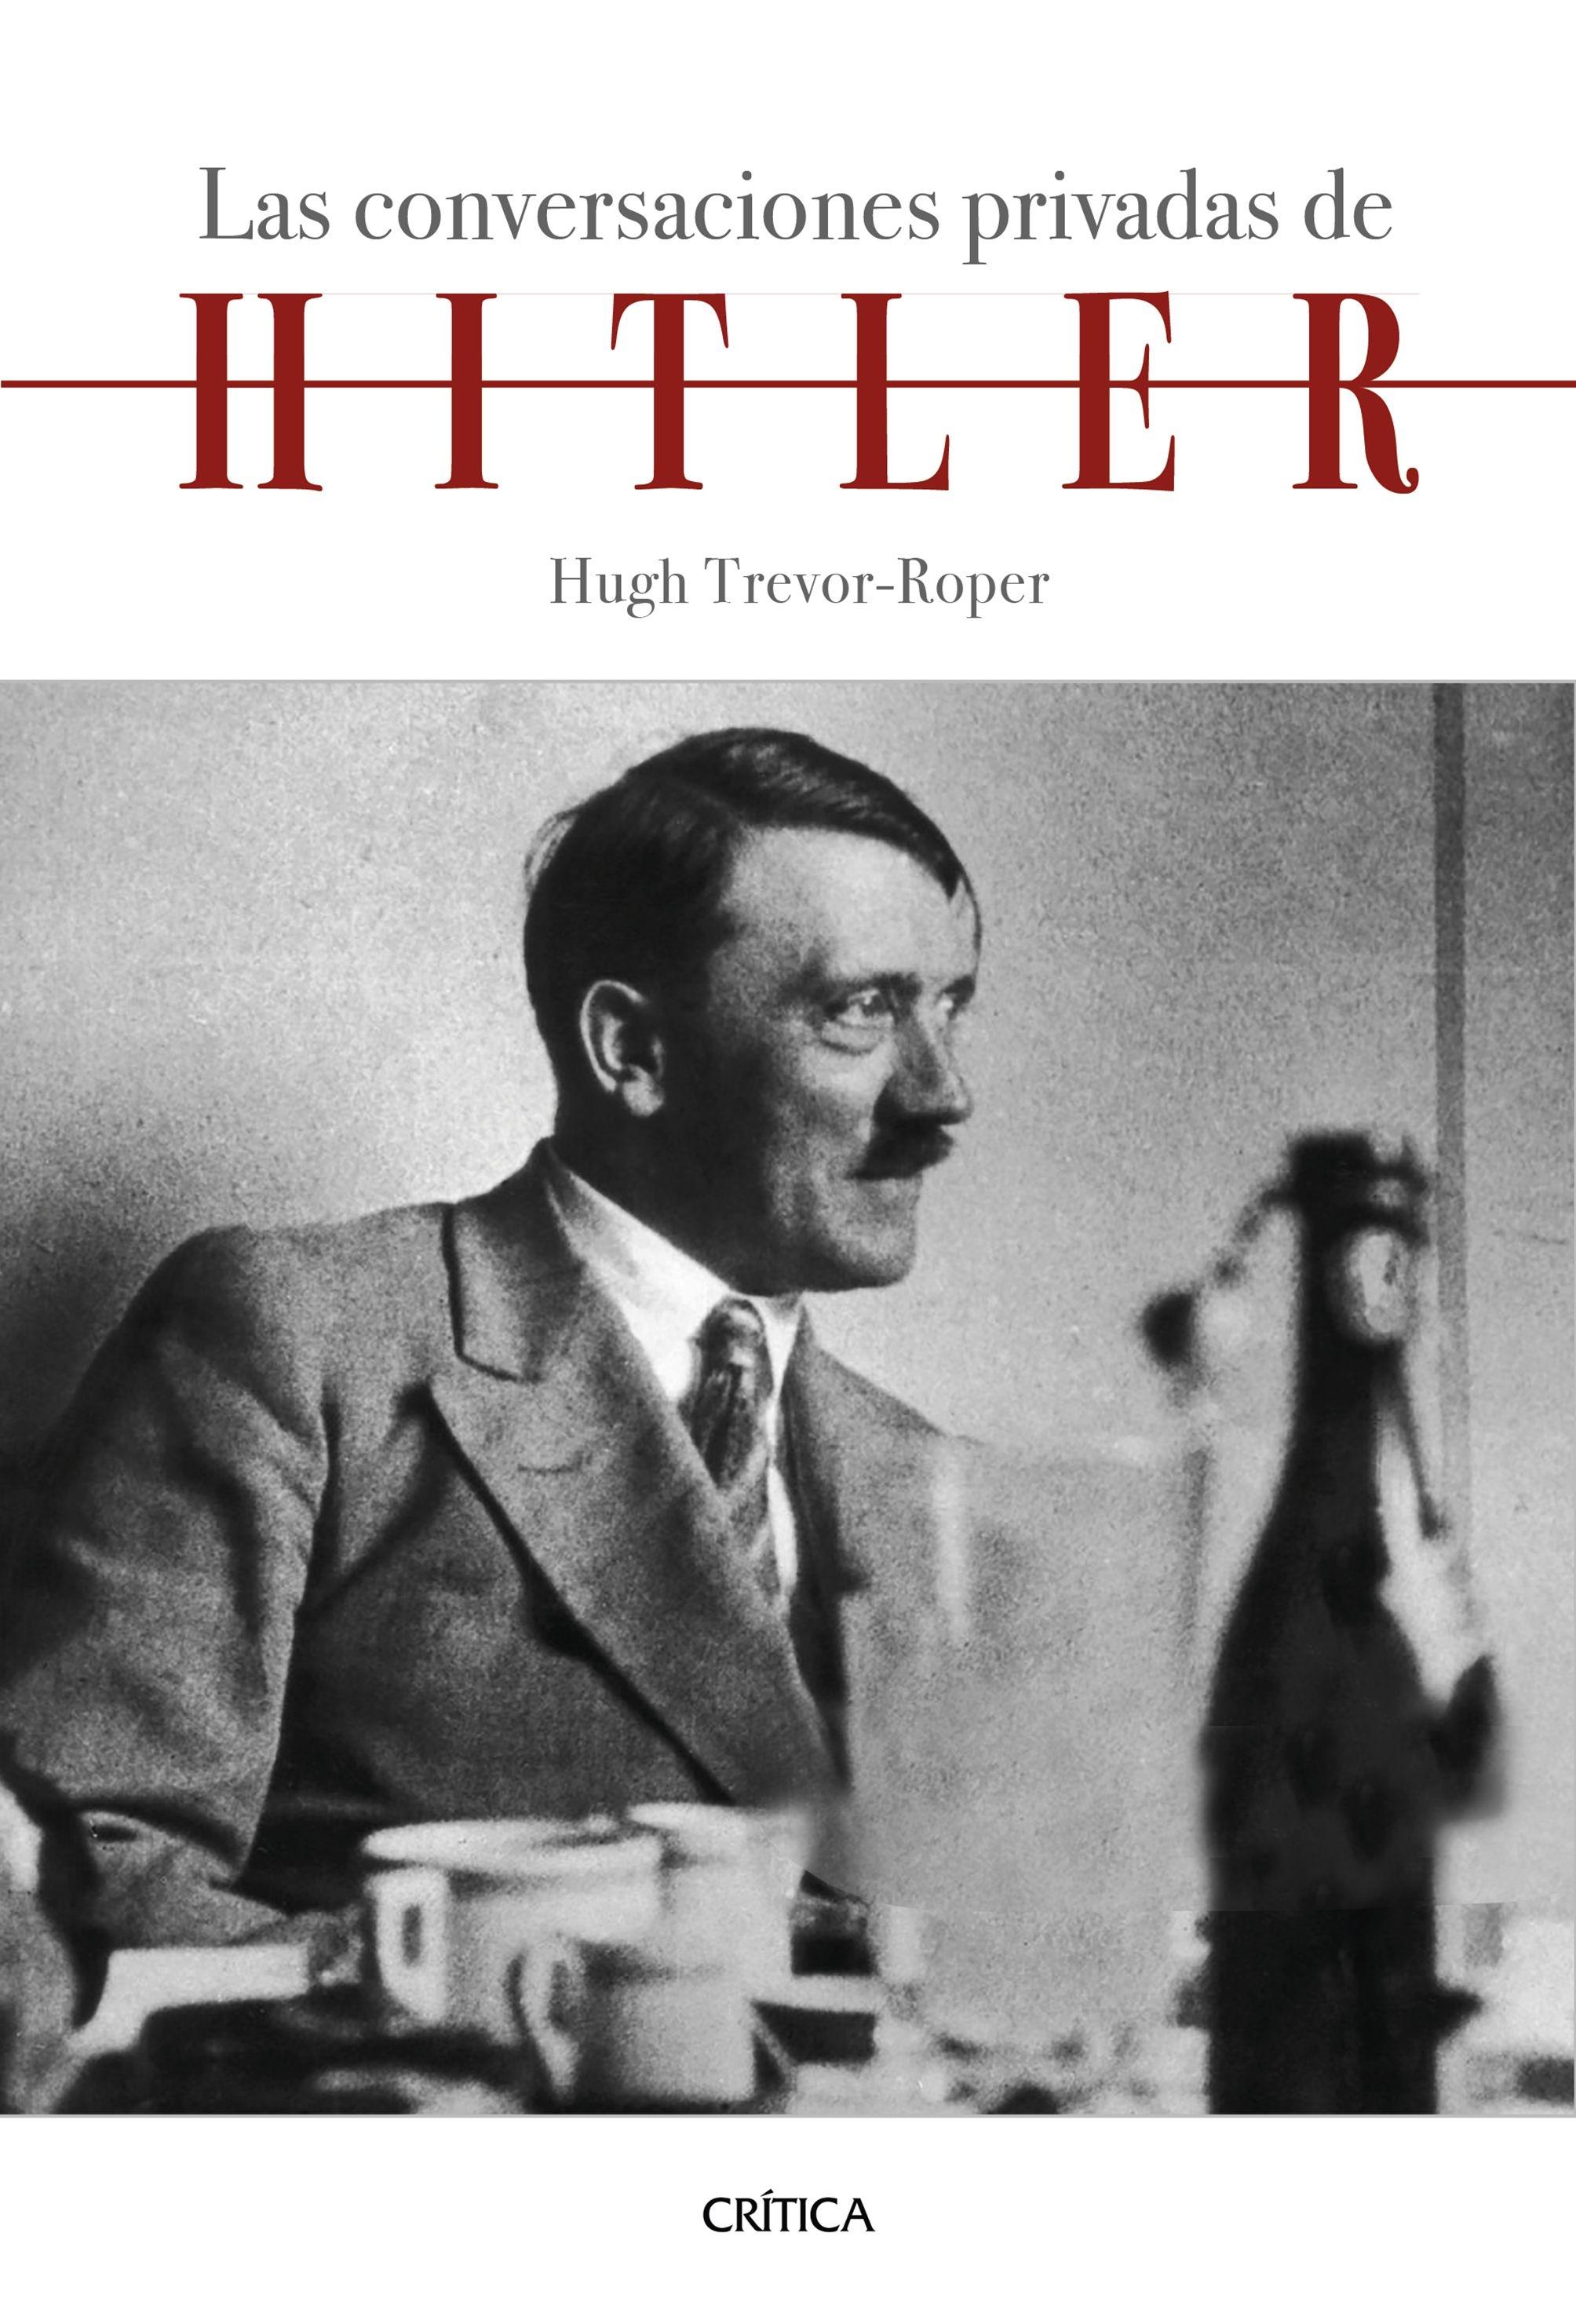 Las conversaciones privadas de Hitler "Introducción de Hugh Trevor-Roper"